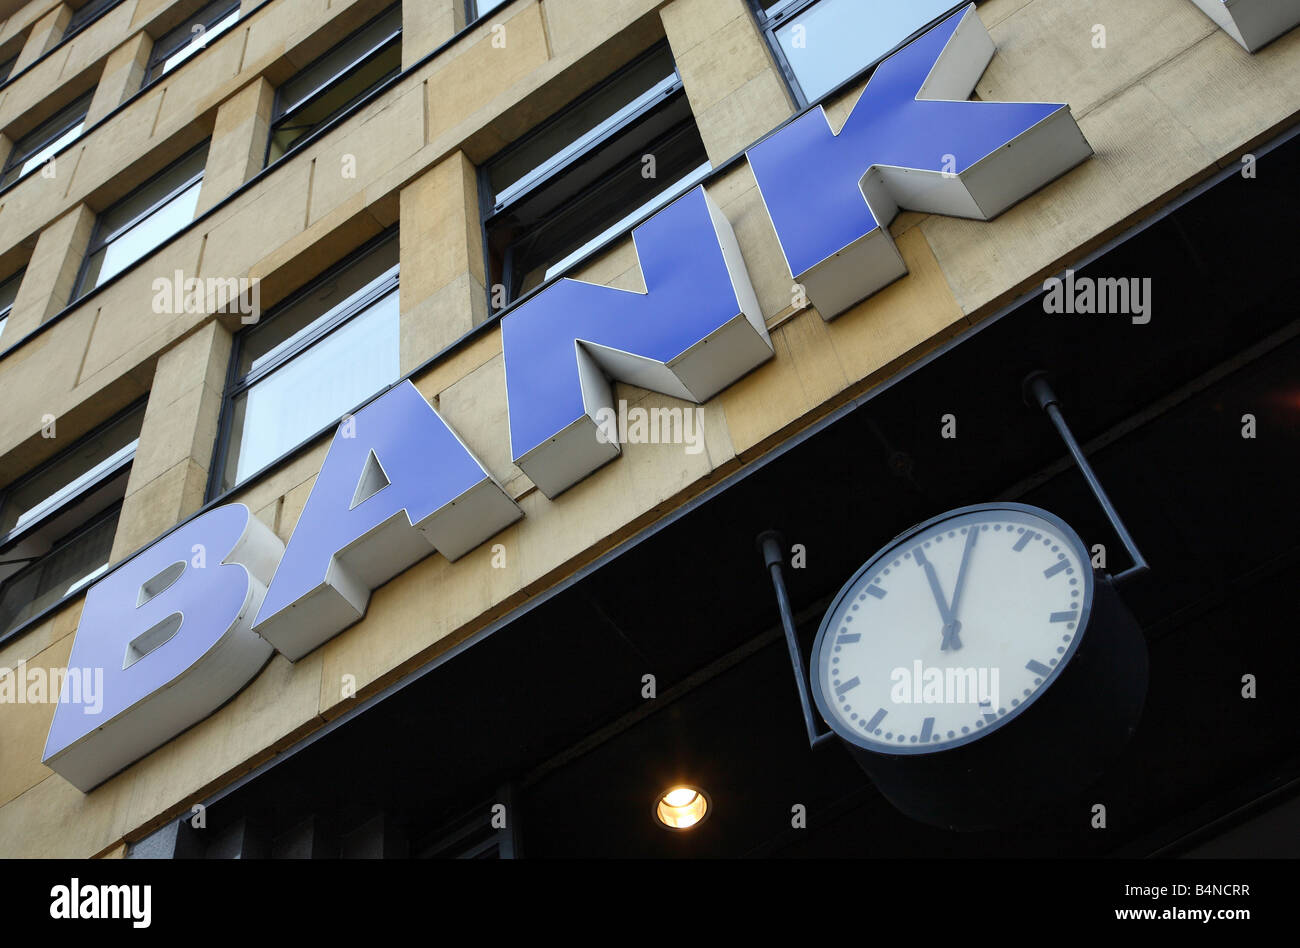 BANK-Schild an einem Gebäude und eine Uhr zeigt 12:05 Stockfoto